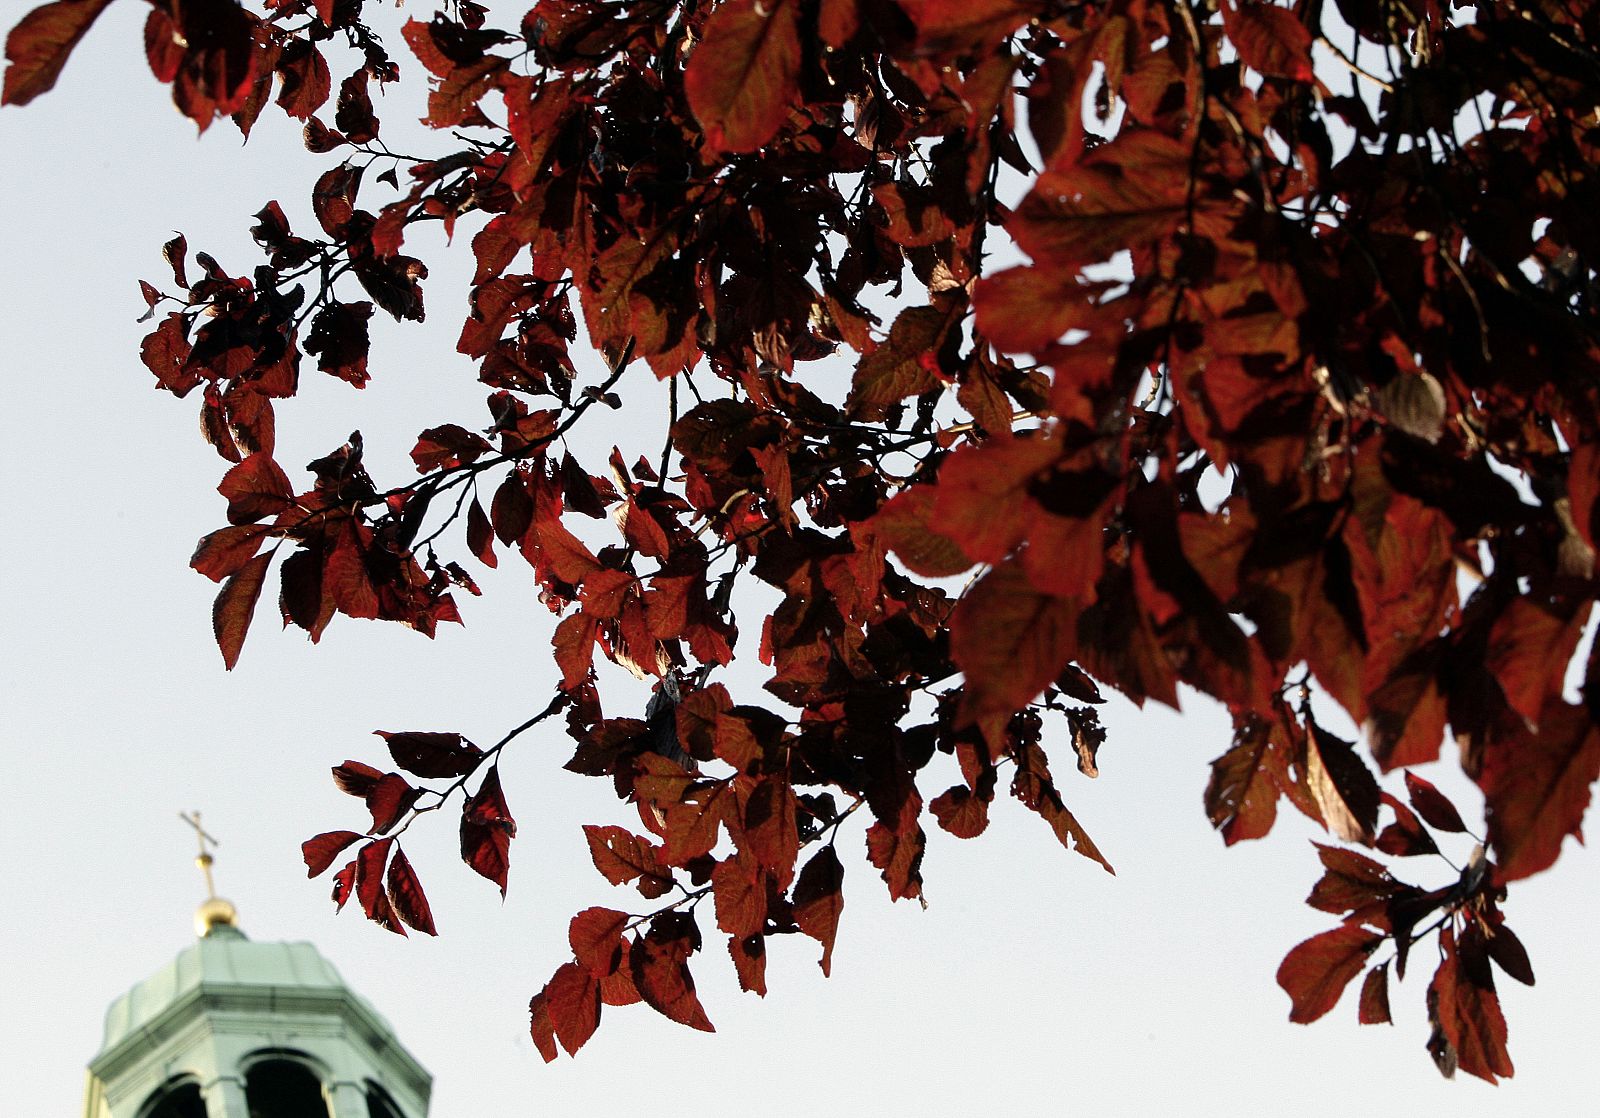 Los científicos barajan varias teorías sobre el porqué del color rojo de las hojas con la llegada del otoño.